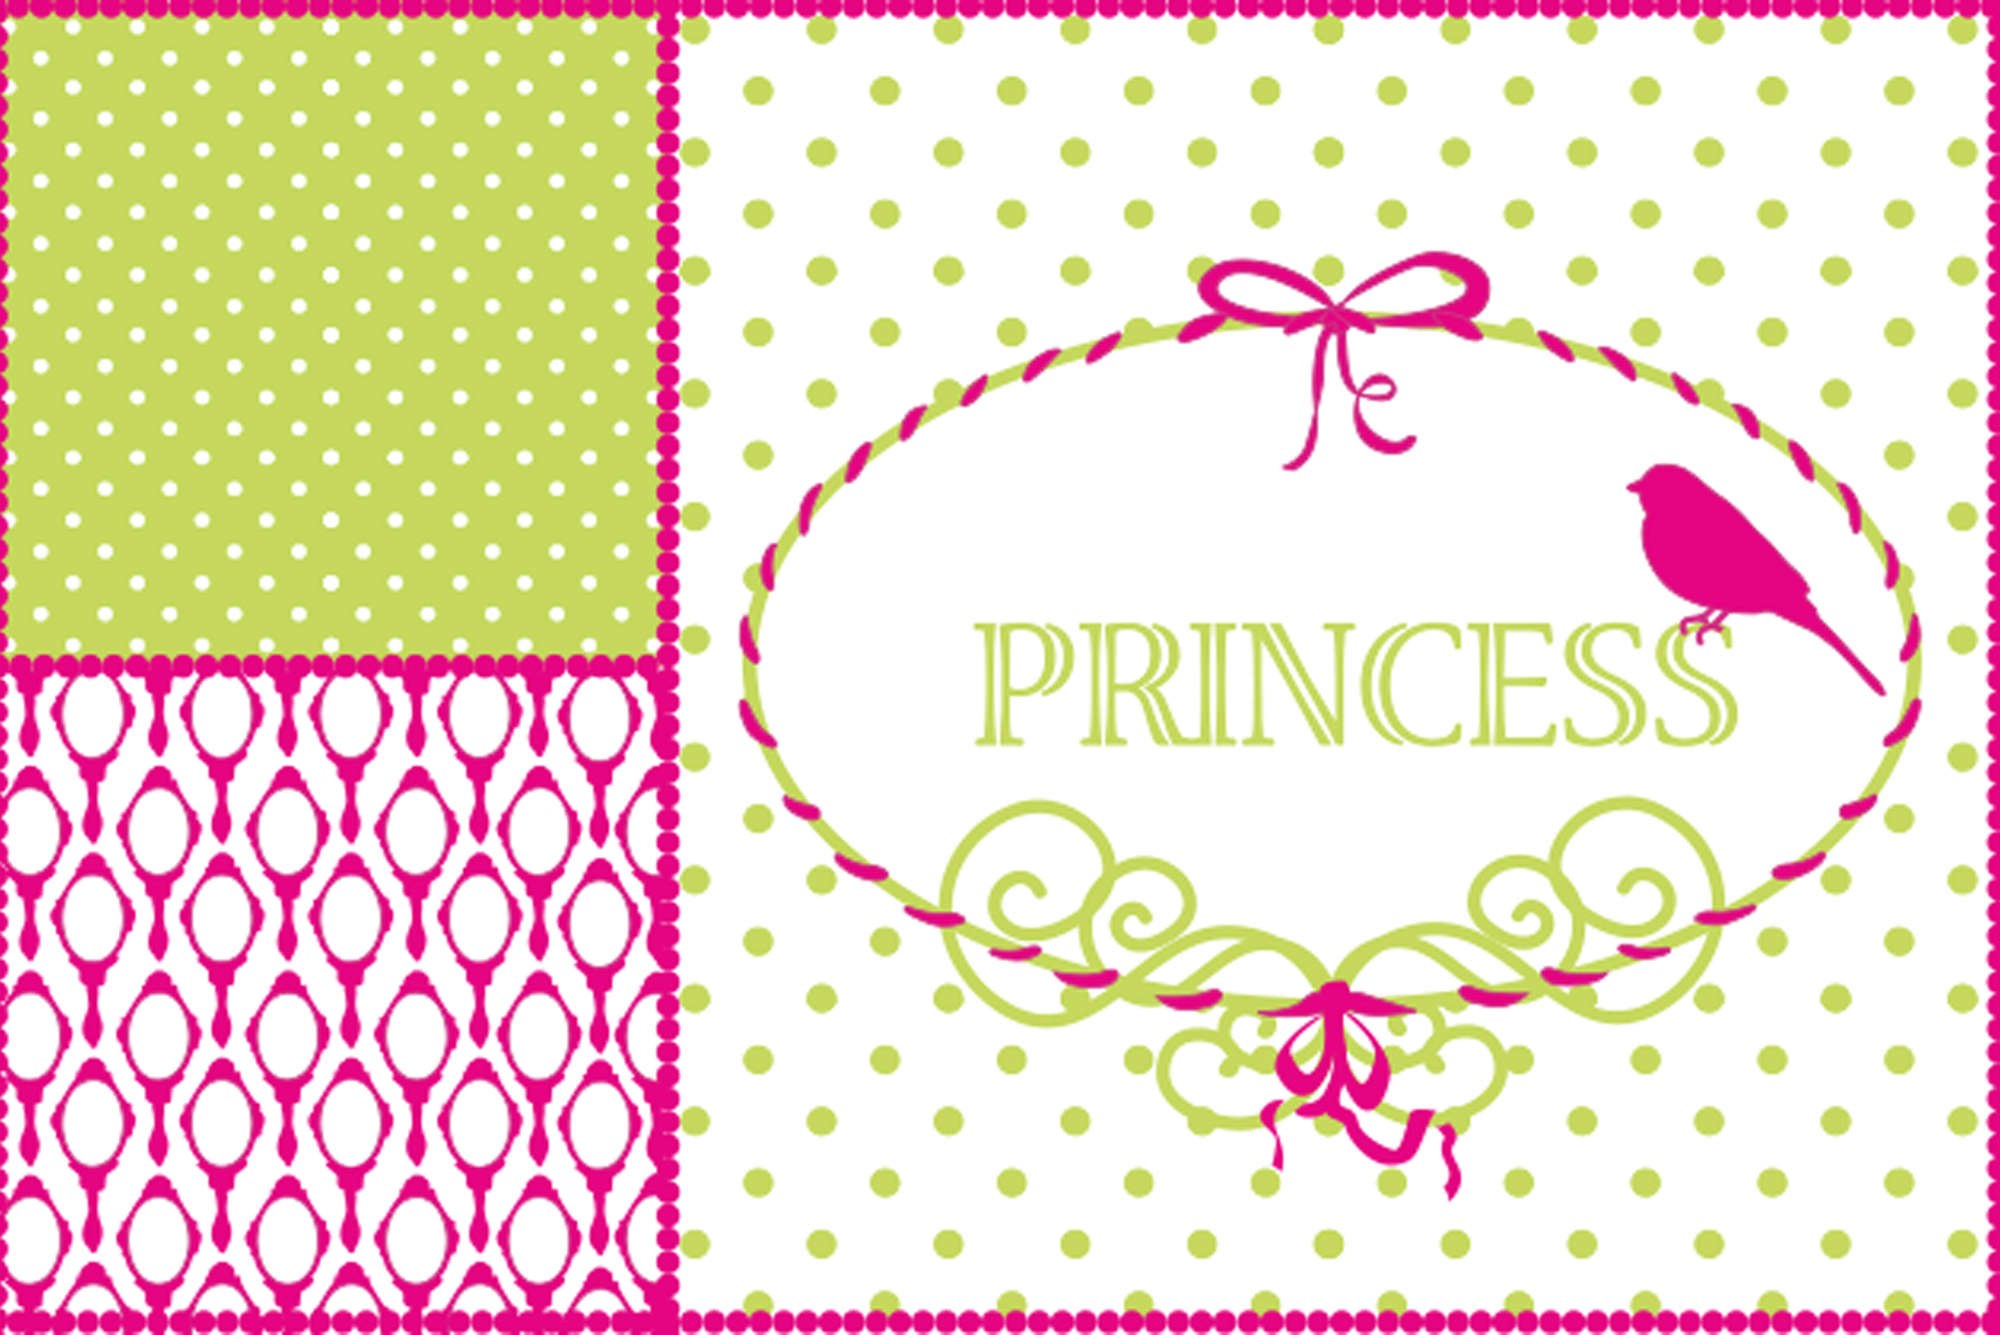             Fototapete im Kinderdesign mit Schriftzug "Princess" – Strukturiertes Vlies
        